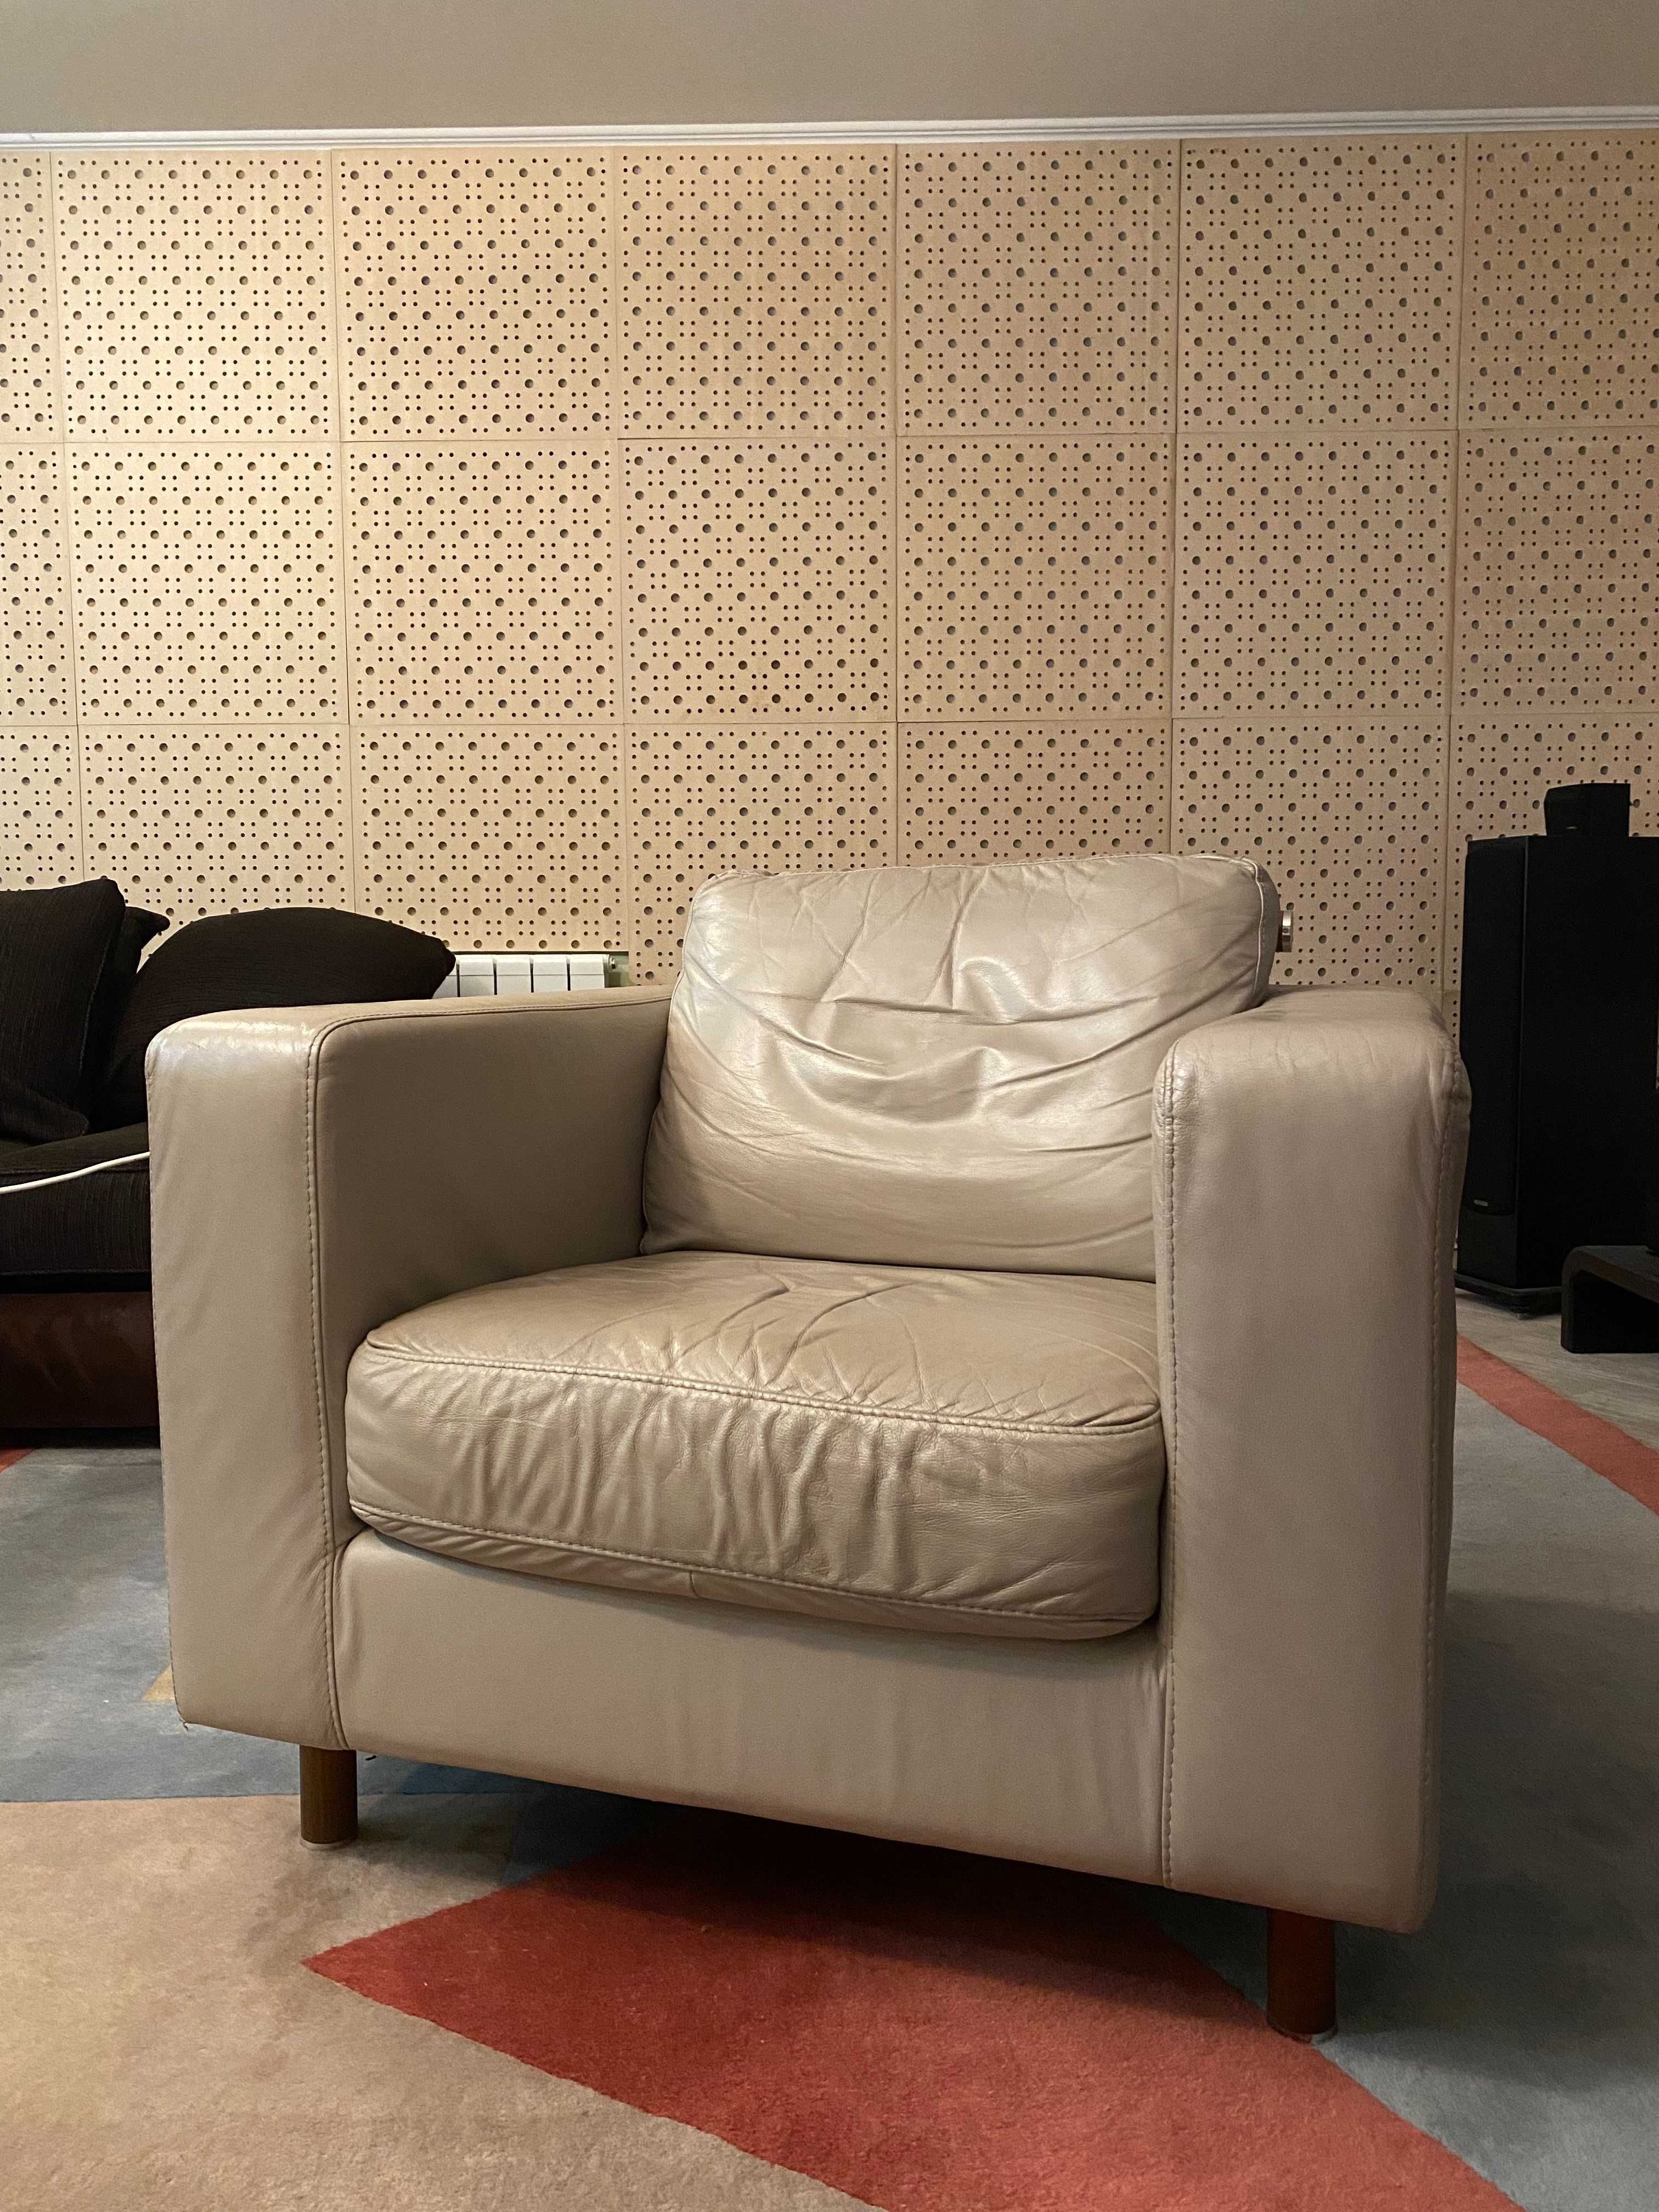 Продам кожаное кресло Natuzzi Milano Grey Leather Armchair